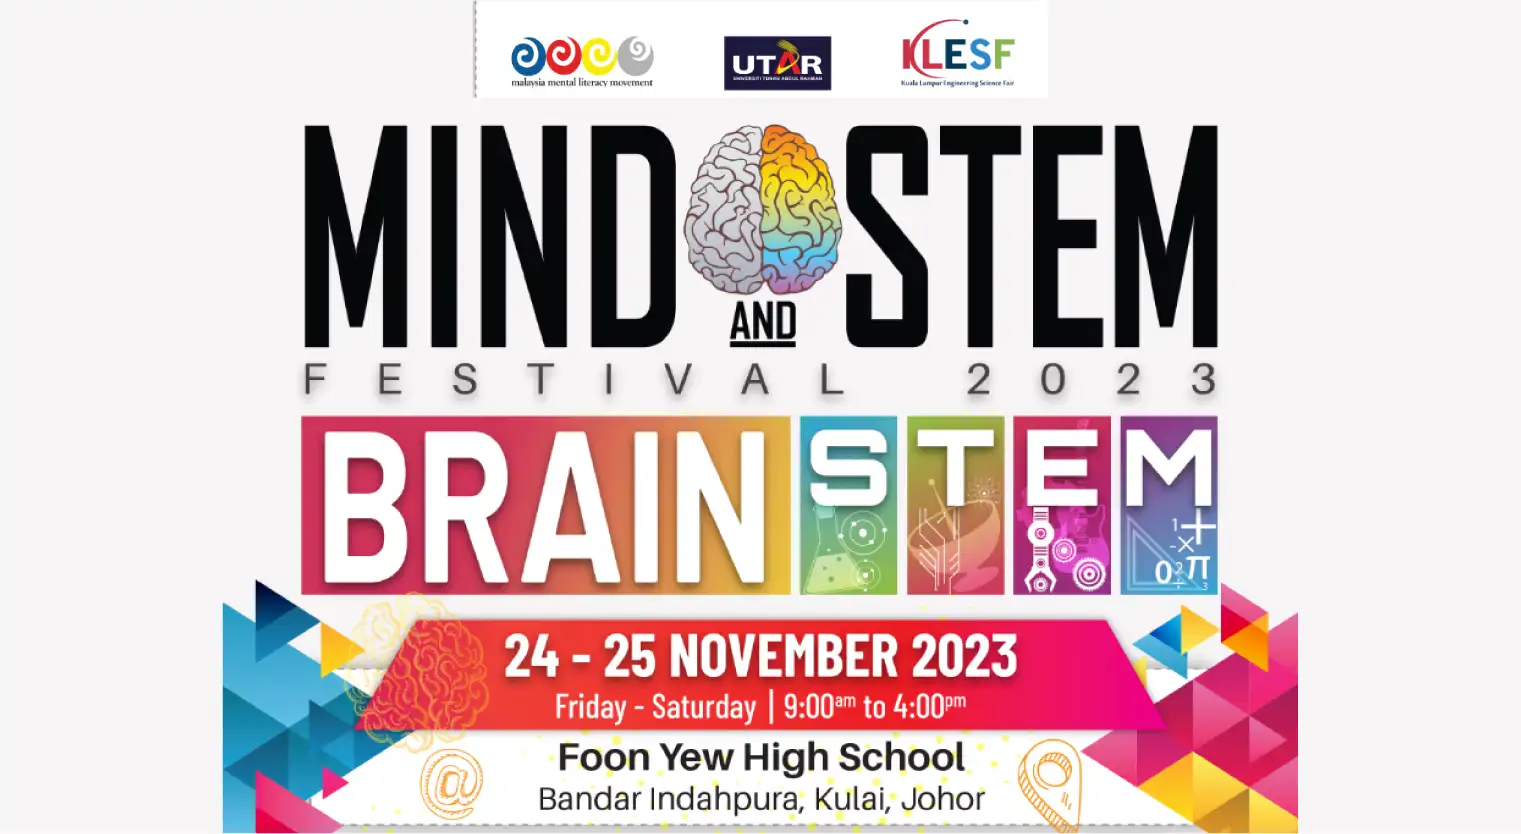 join-utar-mind-stem-festival-johor-november-2023